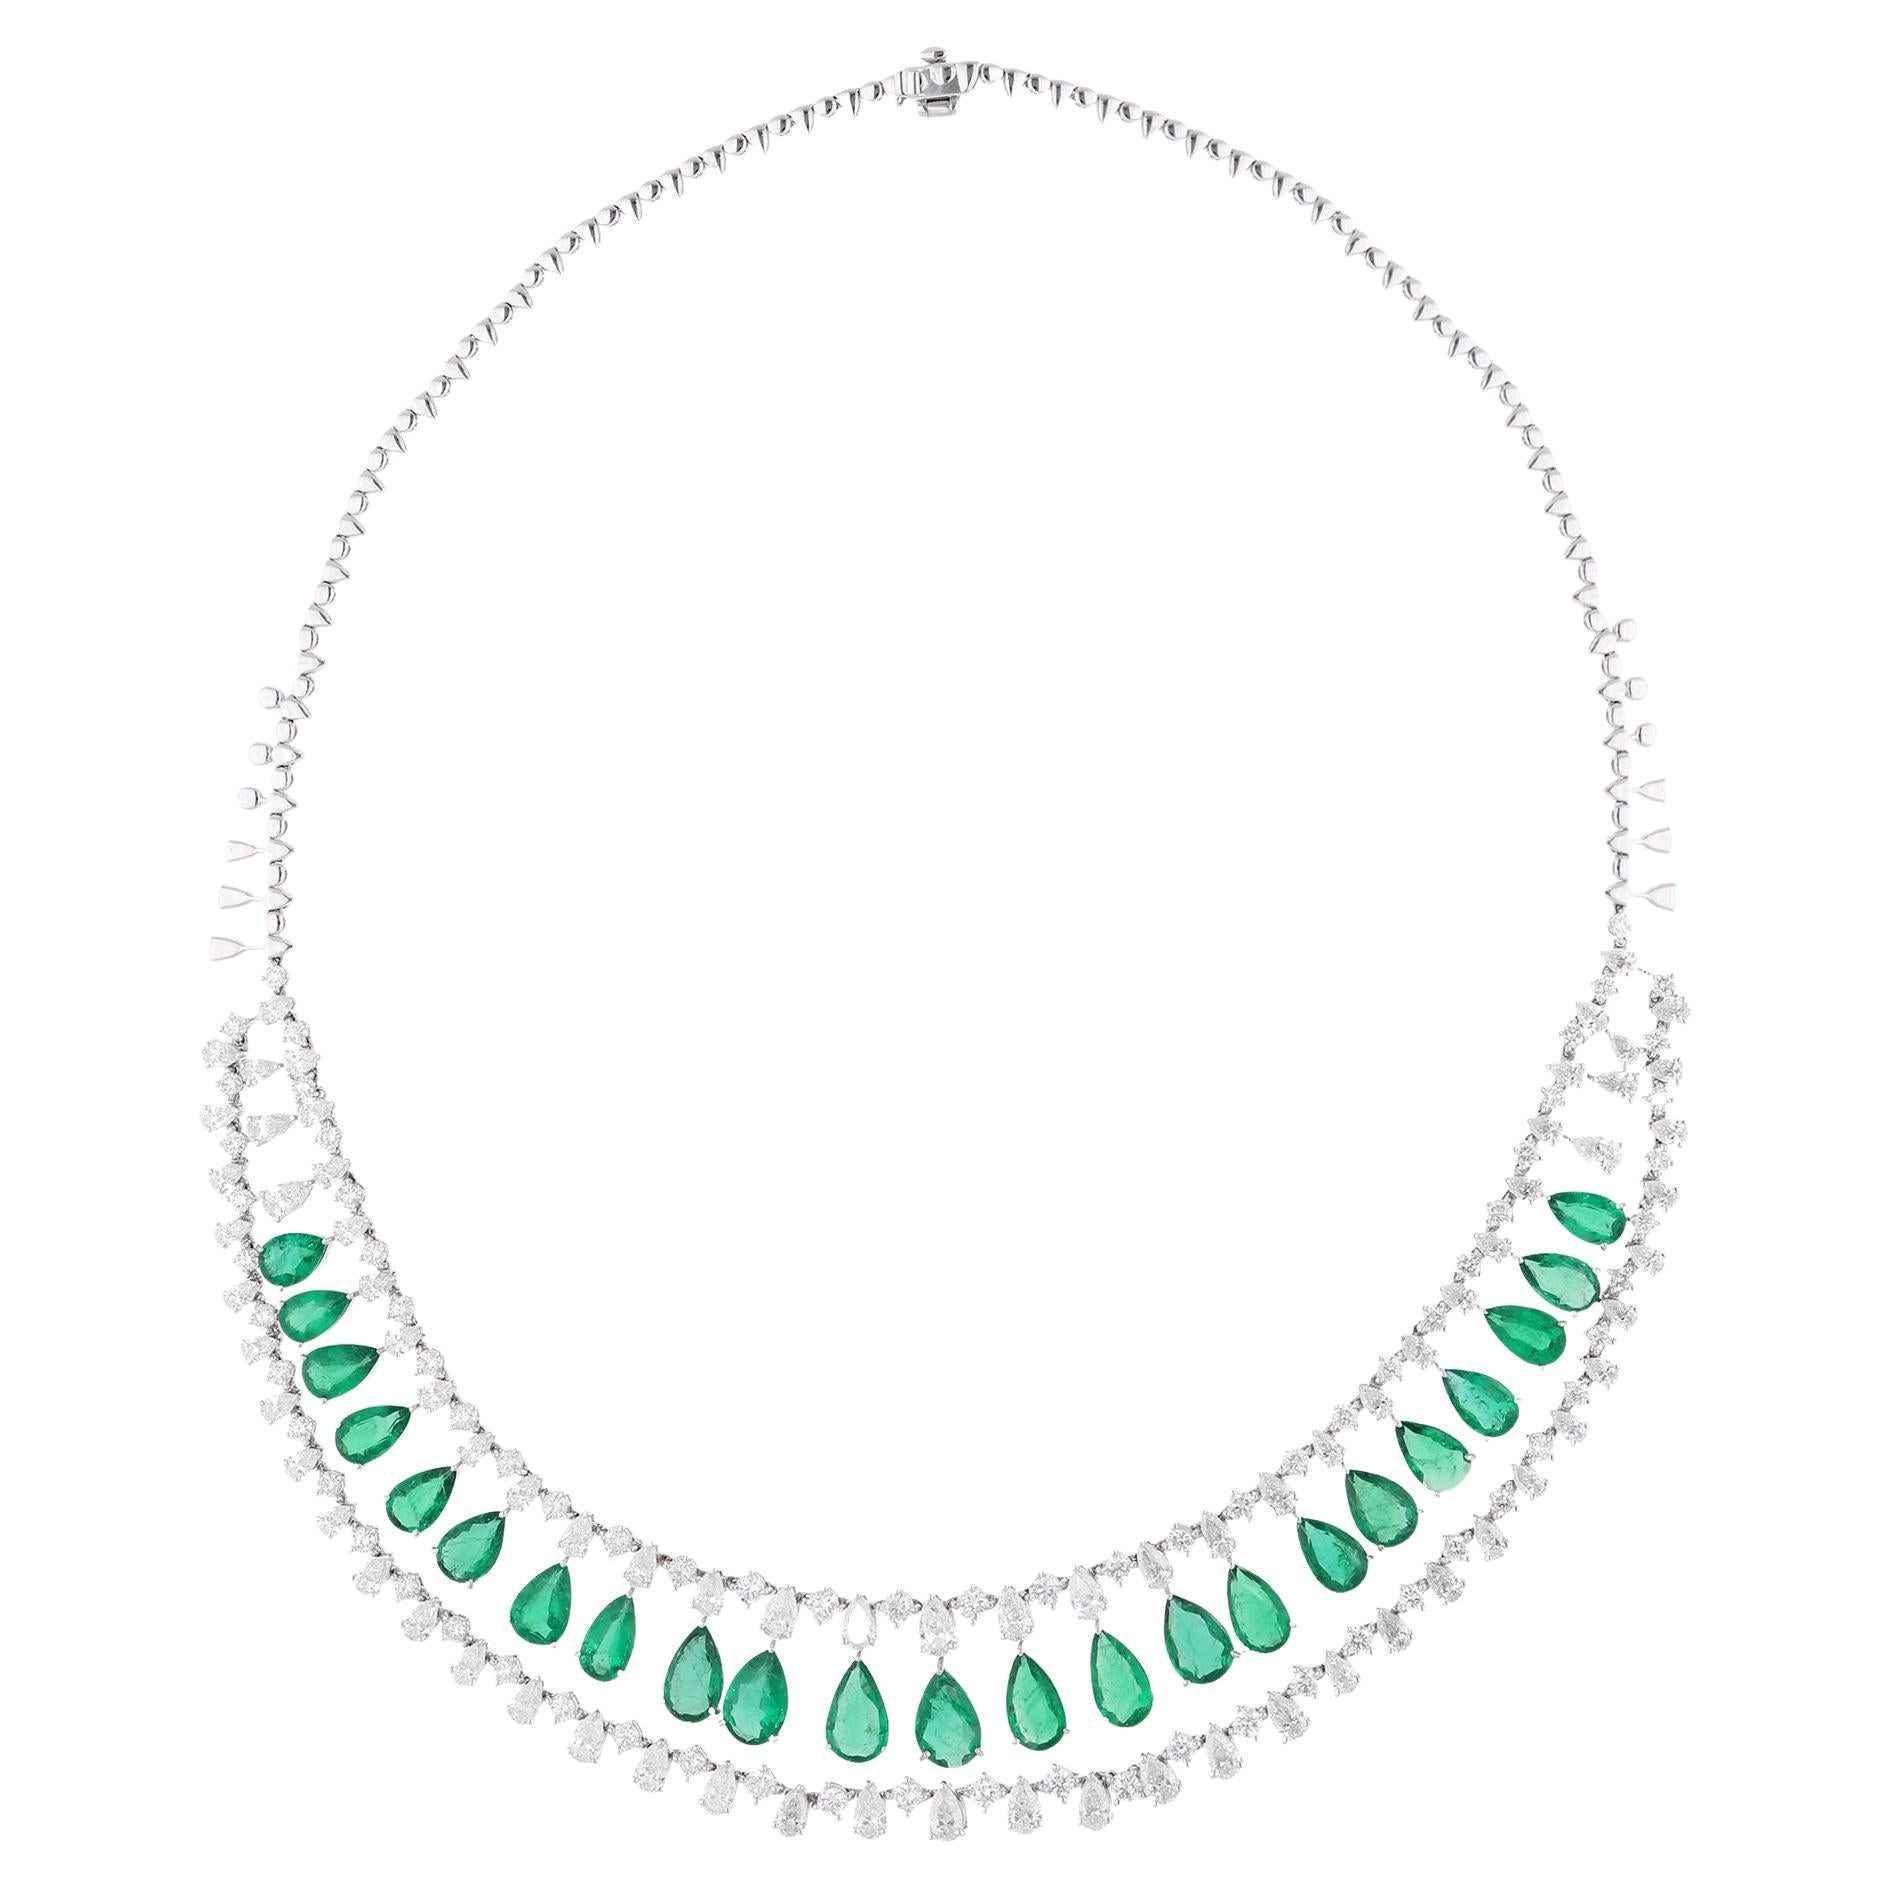 Echte Birne sambischen Smaragd Edelstein Halskette Diamant 18 Karat Weißgold Schmuck